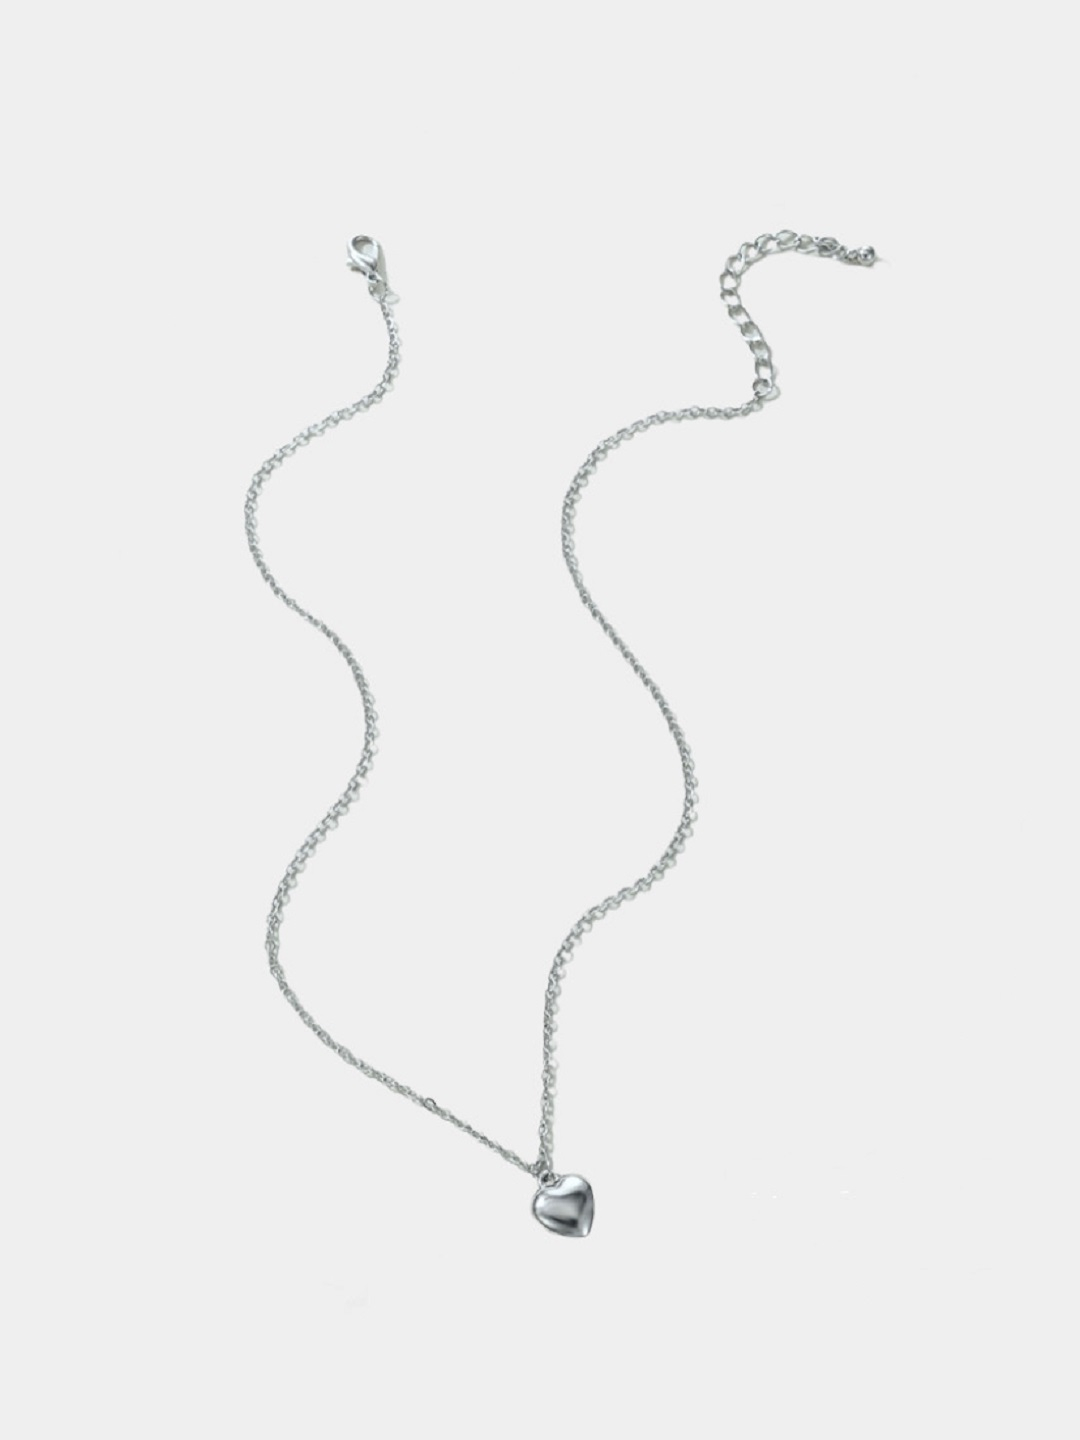 Цепочка с сердечком на шею, женское ожерелье с подвеской купить по цене 129₽ в интернет-магазине KazanExpress